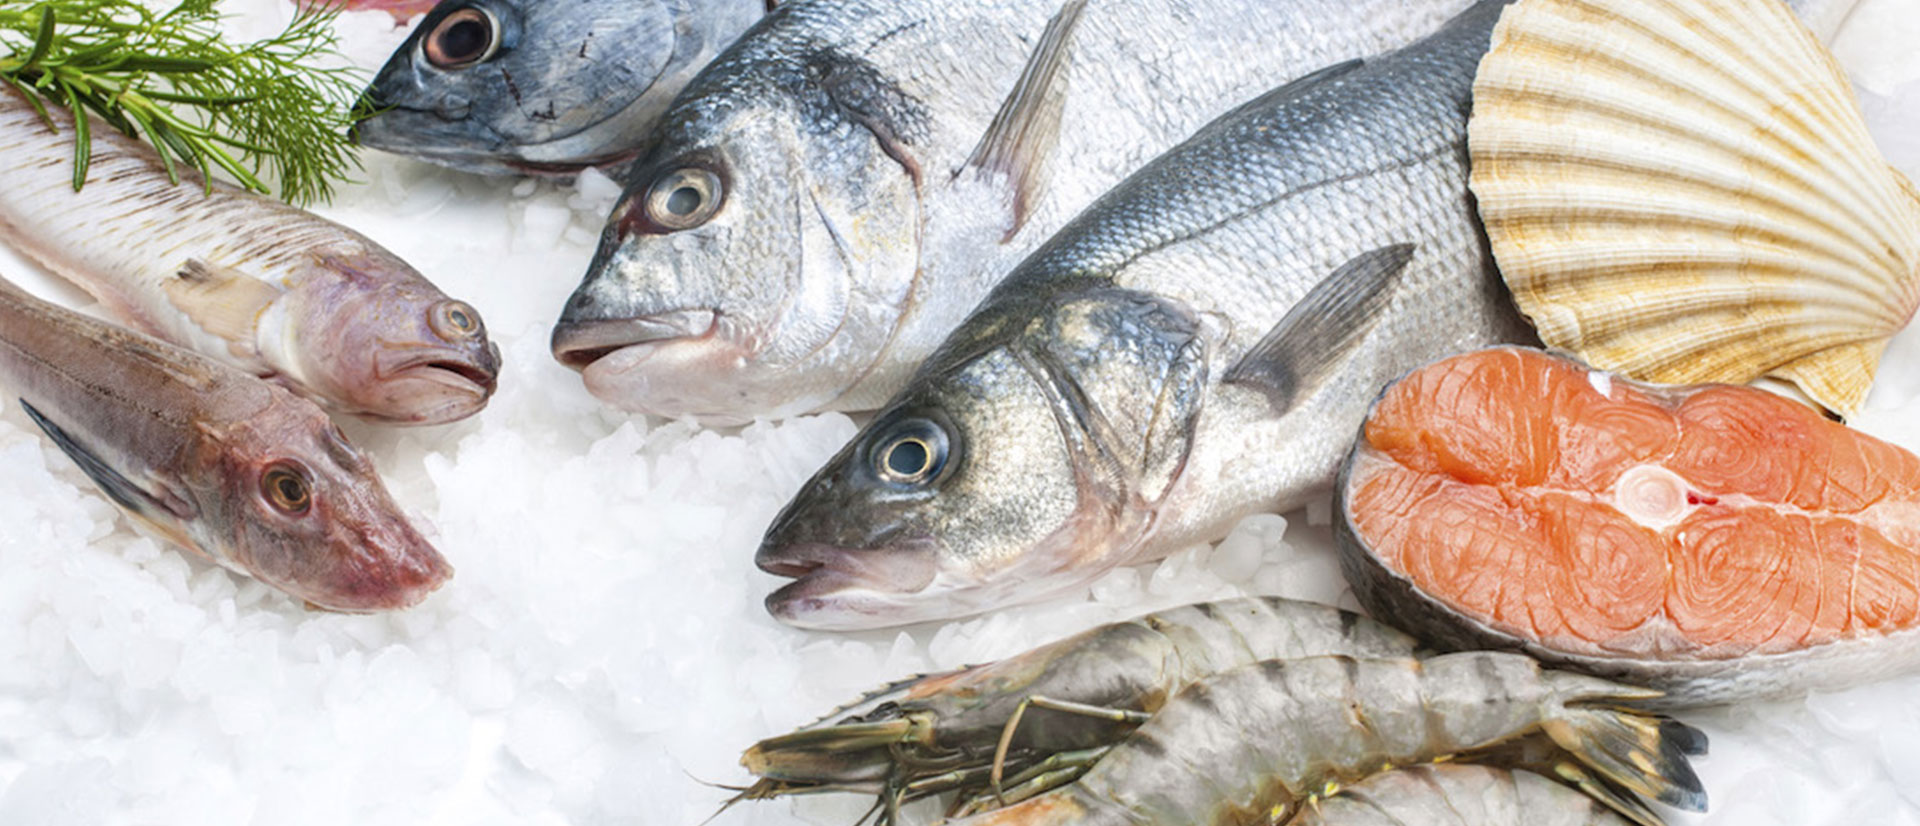 Pescara: prodotti ittici non in regola, sequestrata più di una tonnellata e mezza di merce